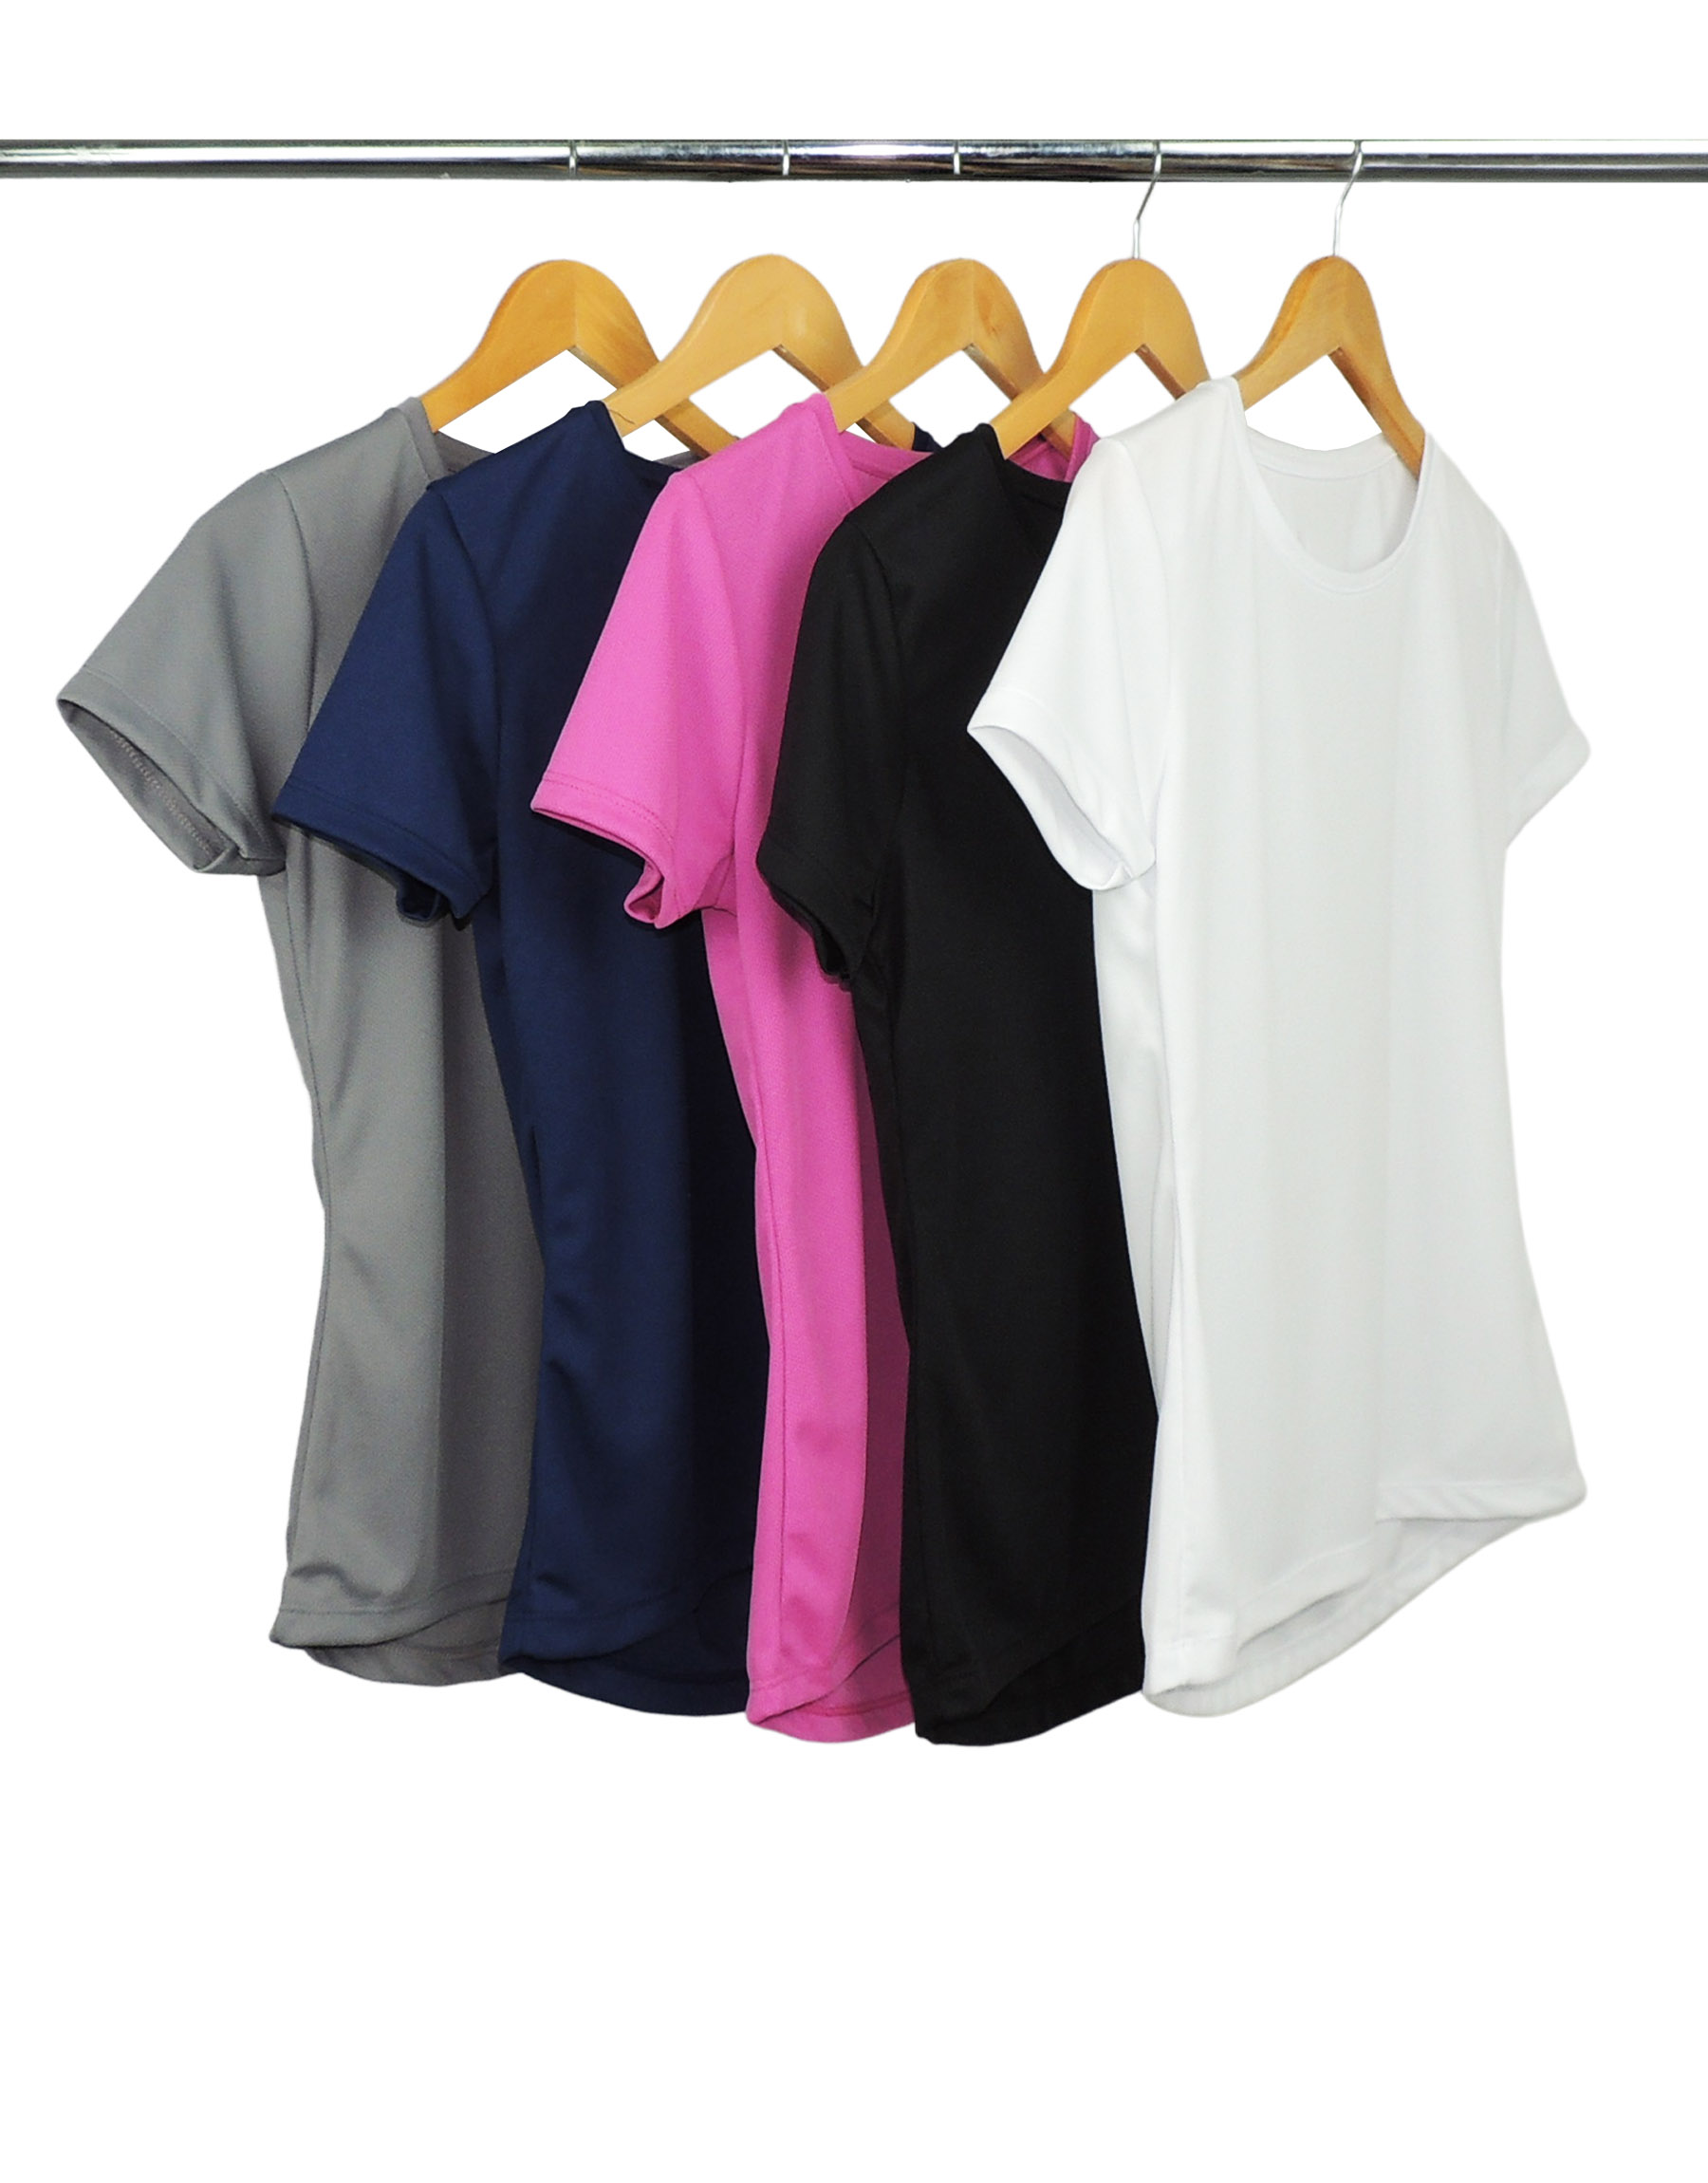 Kit 5 Camisetas Femininas Dry Fit Proteção UV 30+ 13